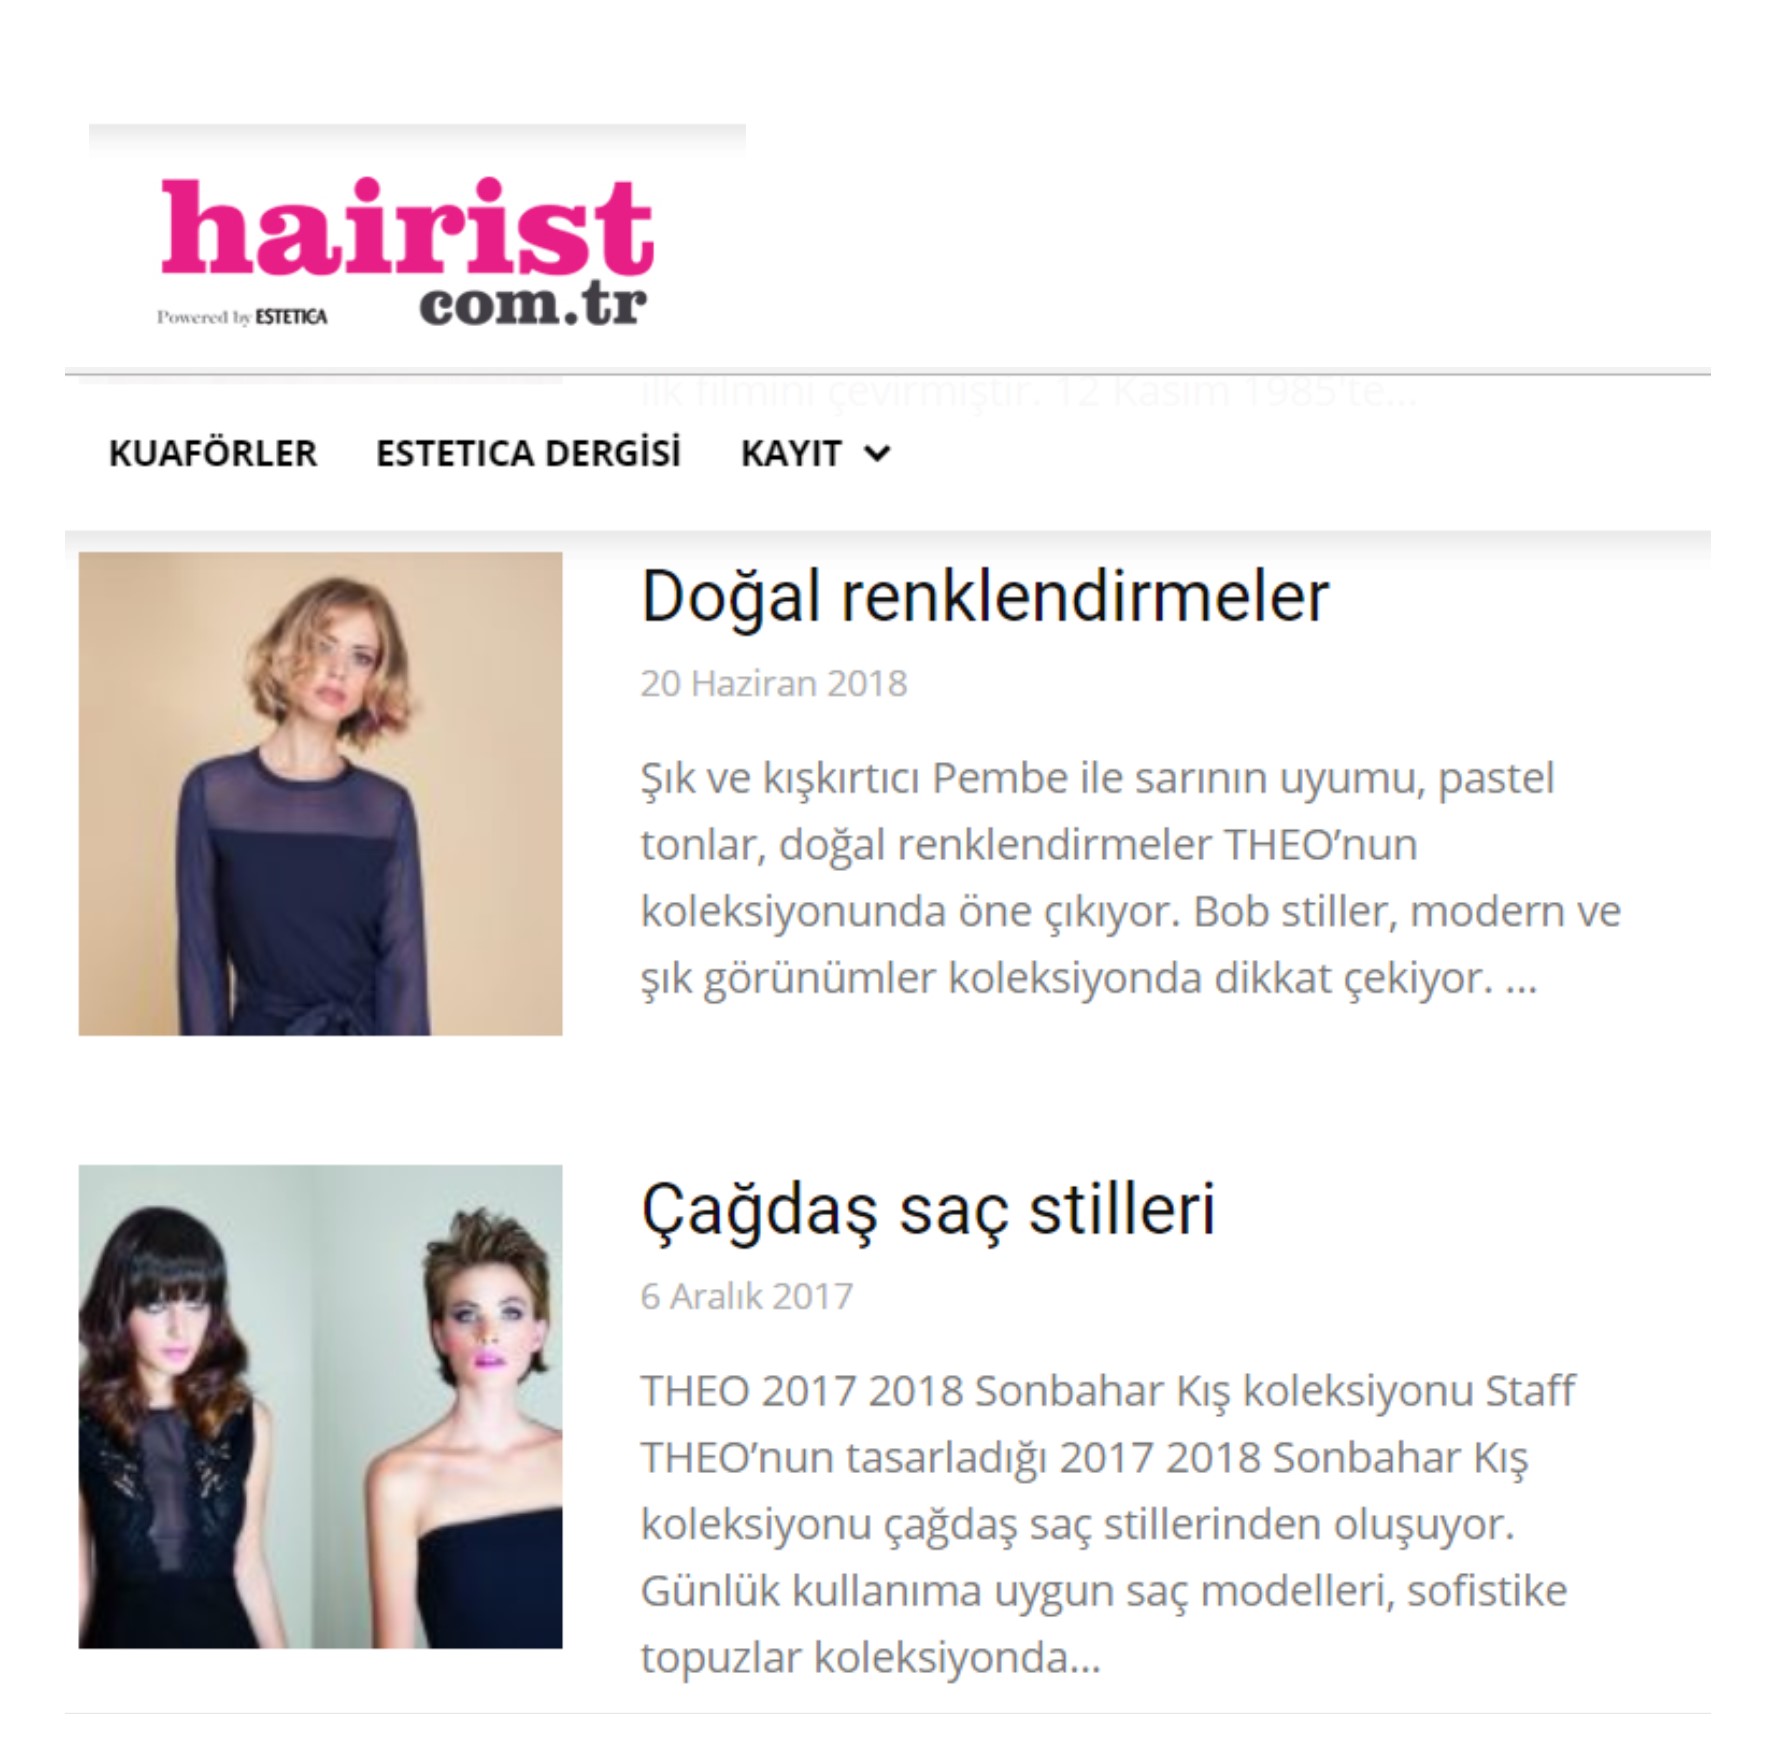 Le Collezioni THEO sul portale turco “Hairist”